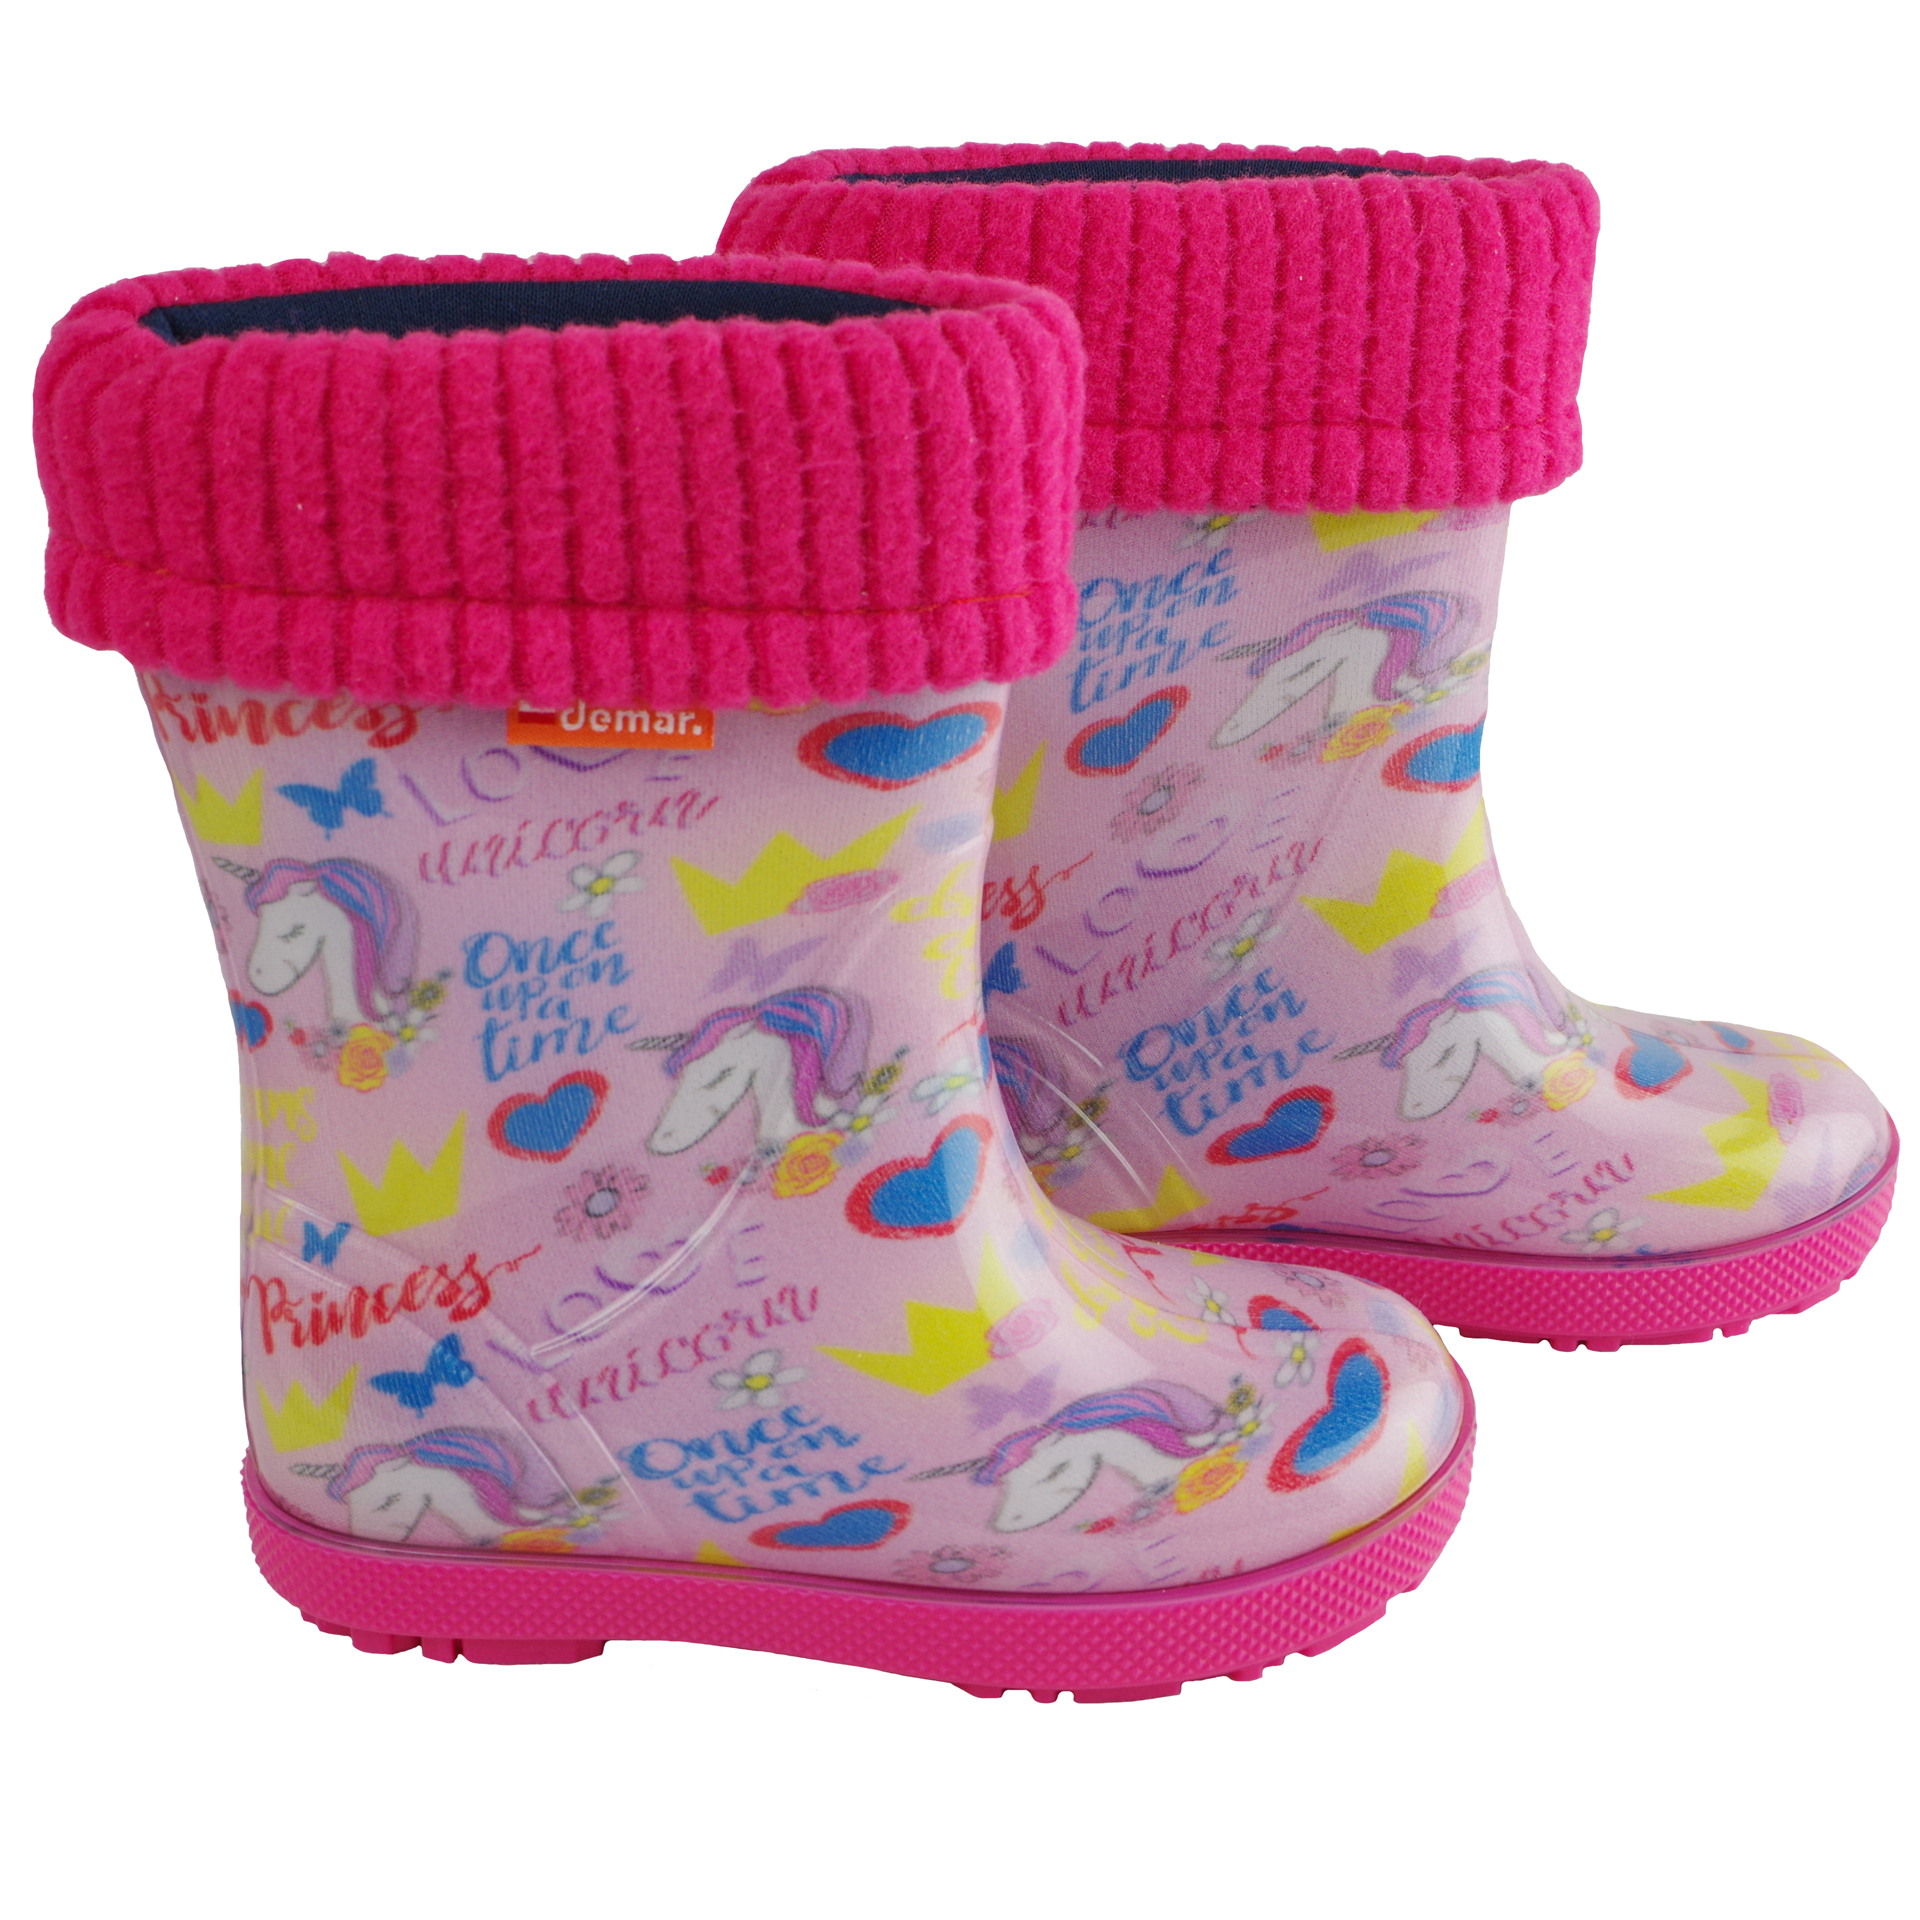 Резиновые сапоги UNICORN (2080) - обувь для девочек в магазине Соул Кидс. Фото 2